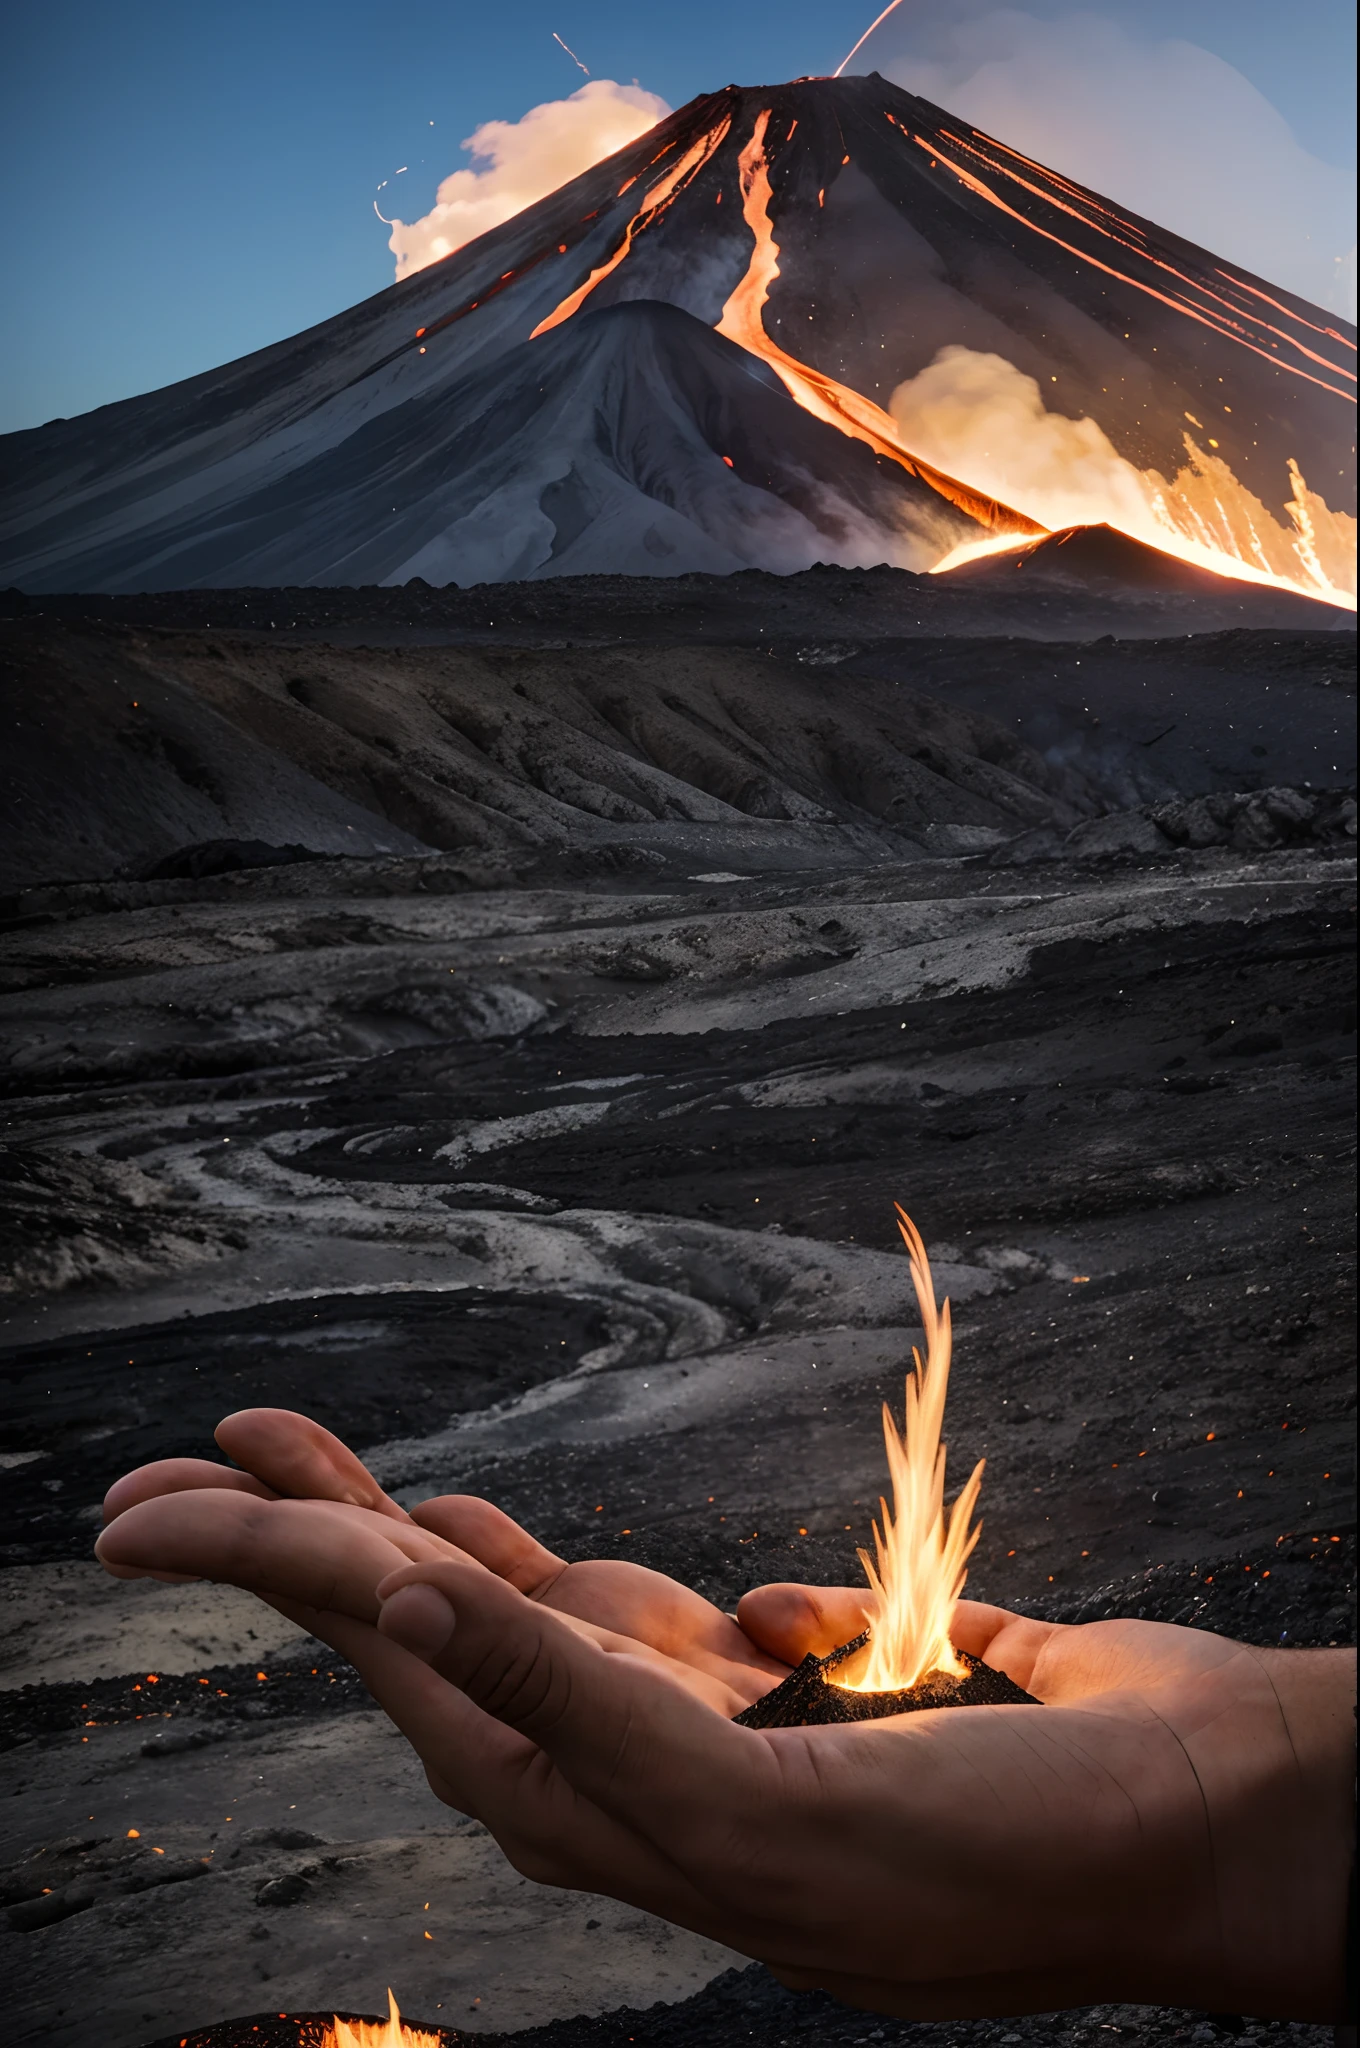 ชายคนหนึ่งถือภูเขาไฟอยู่ในมือ. ภูเขาไฟปะทุลาพิลลีและควัน. ลาวาตกลงมาบนเนินภูเขาไฟ, บนมือแล้วล้มลง